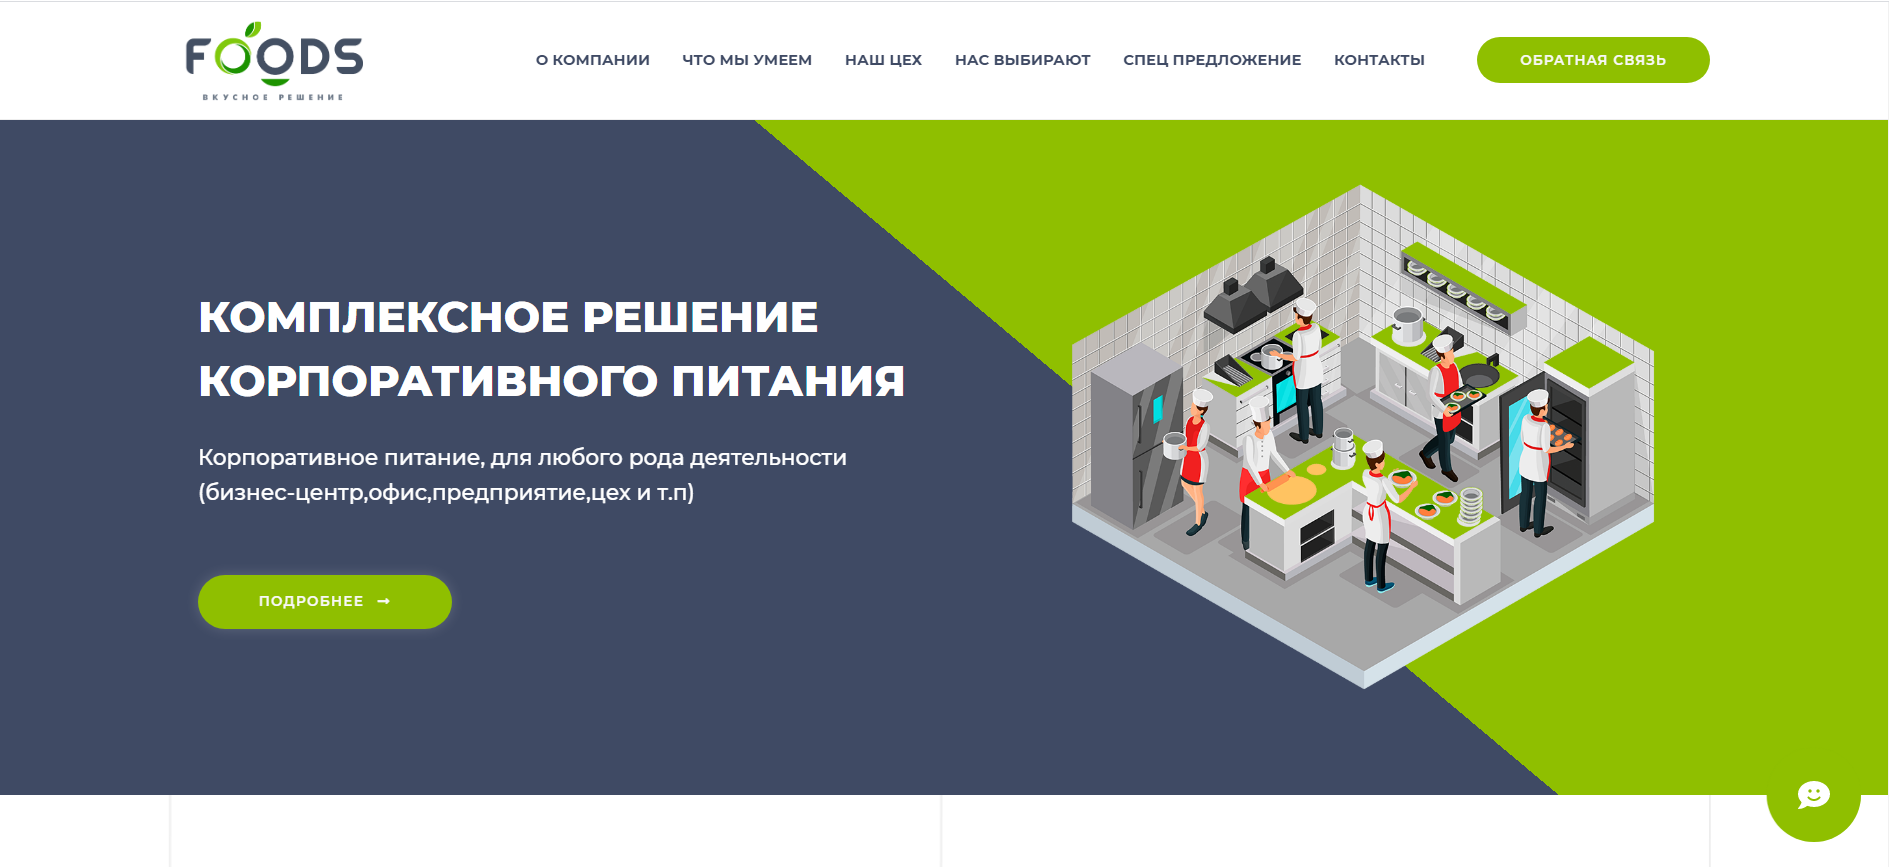 Разработка сайтов Алматы под ключ. Разработка сайта